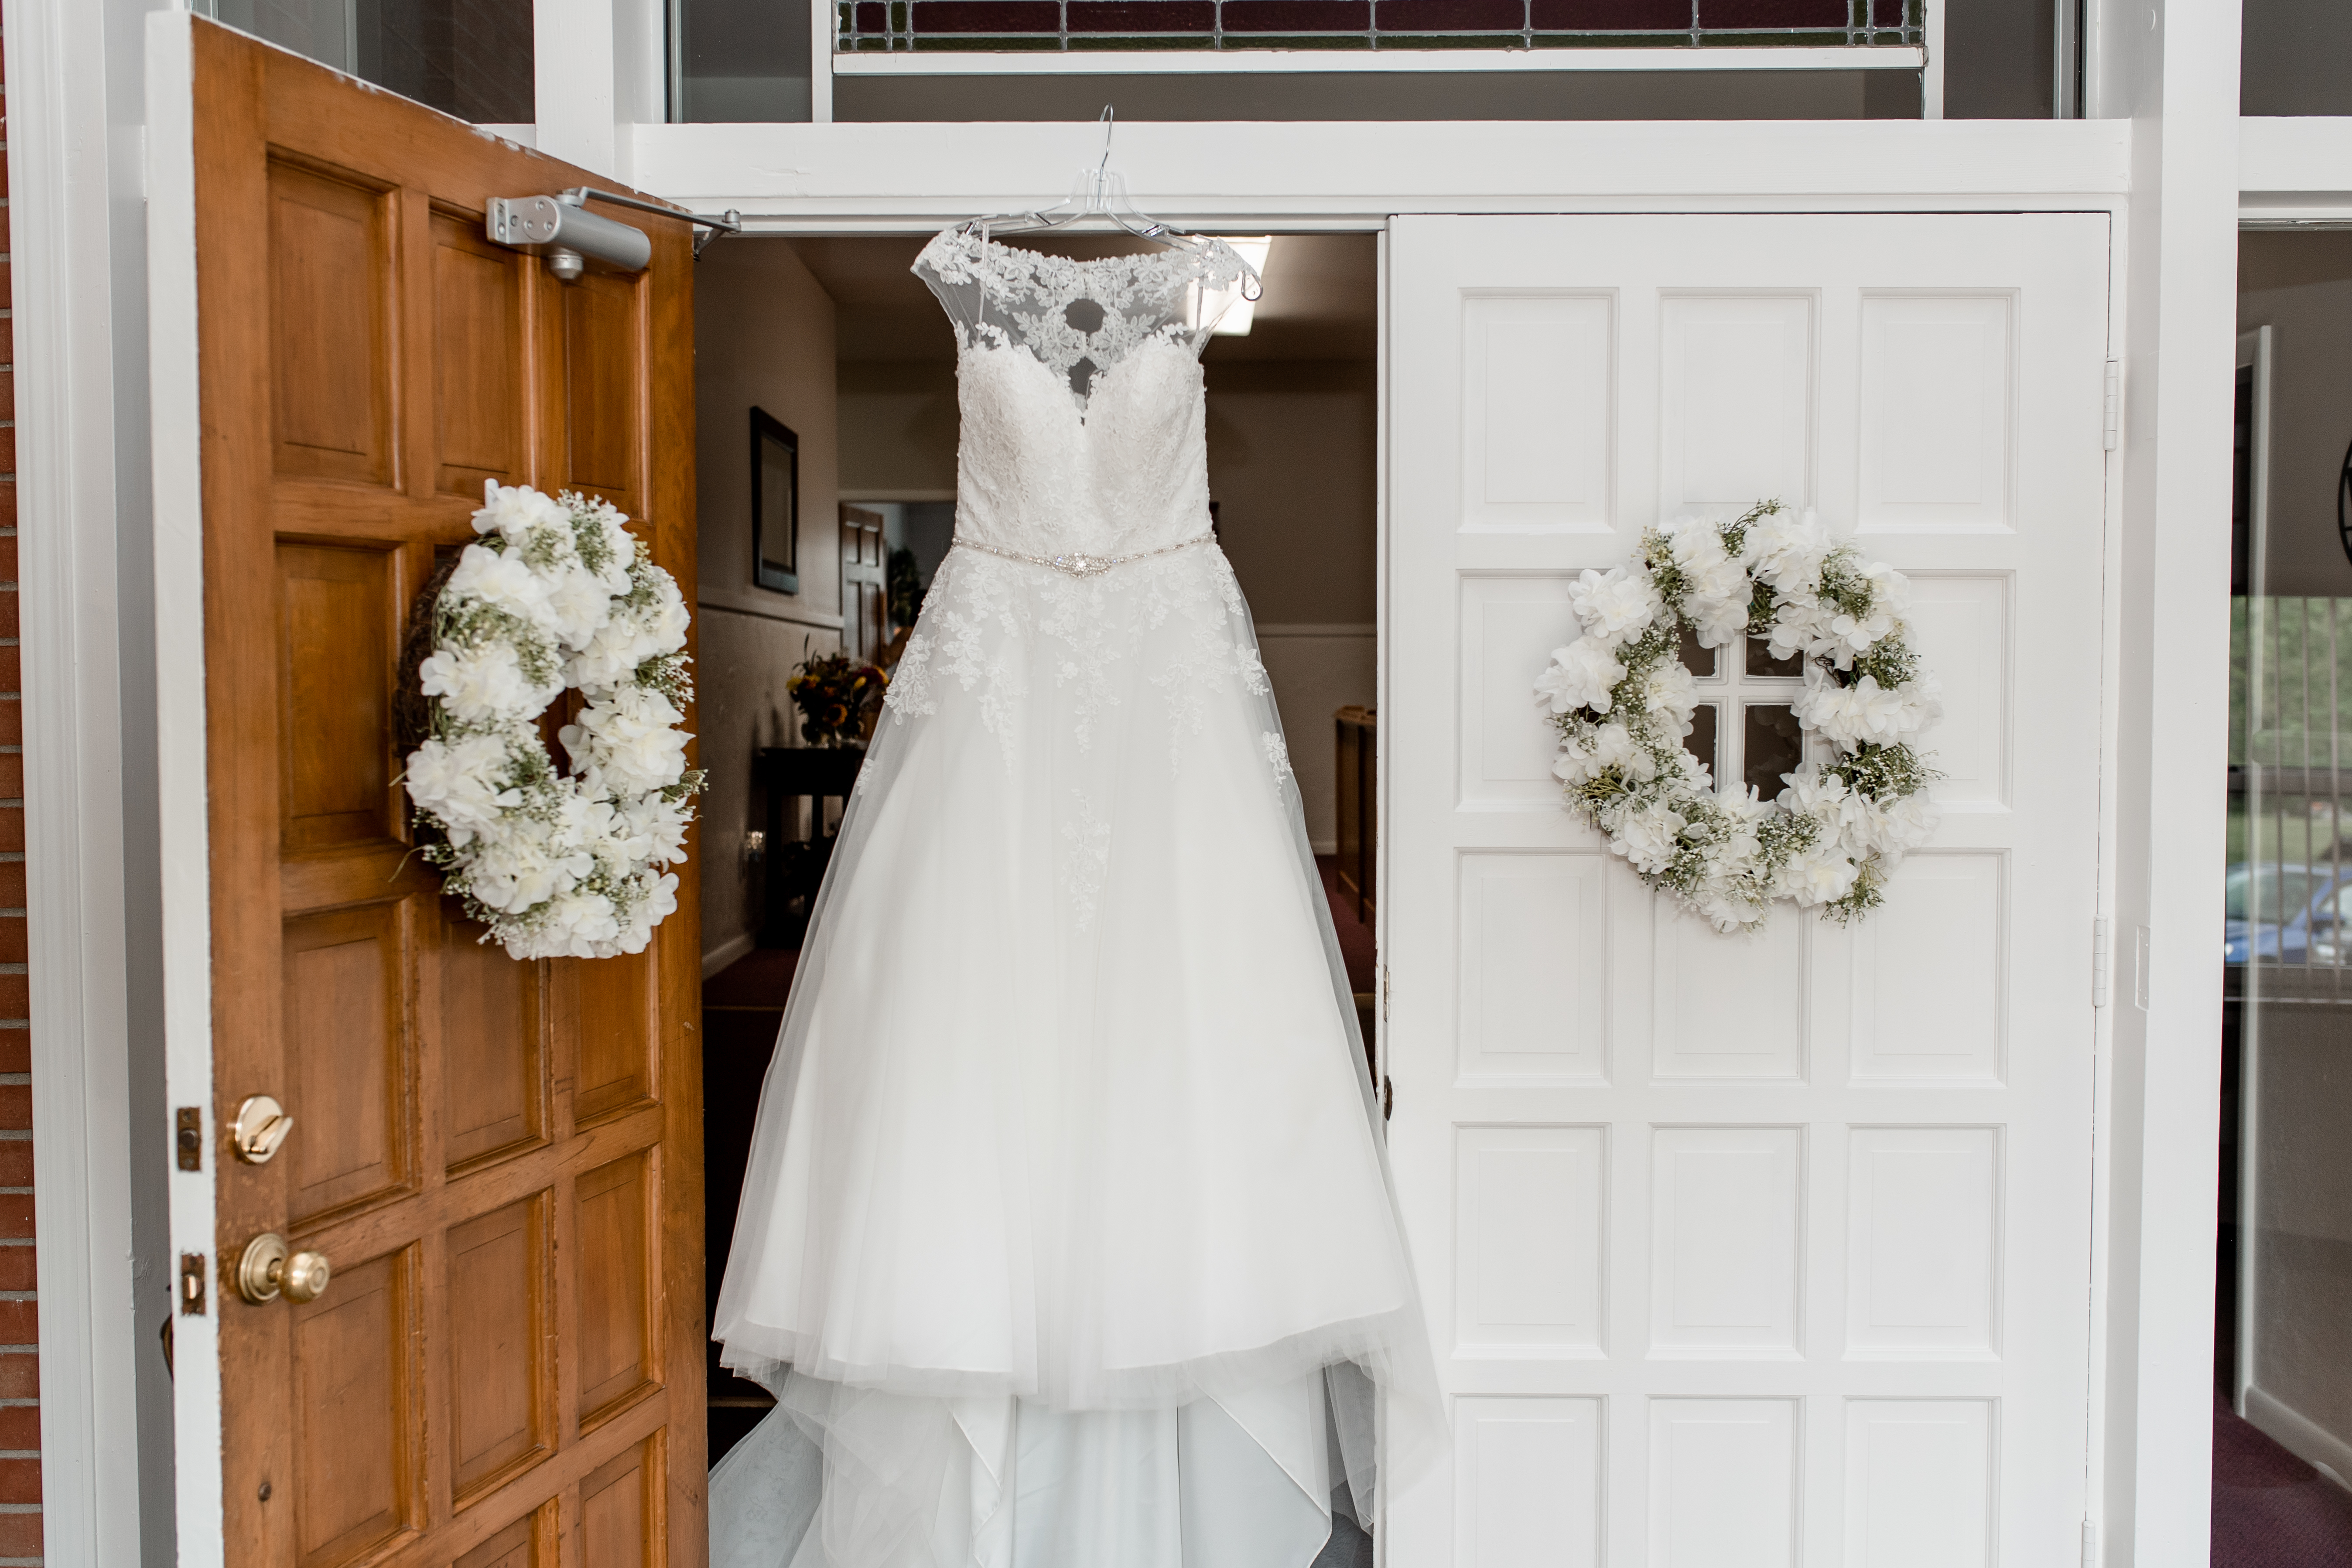 wedding dress hanging in door frame